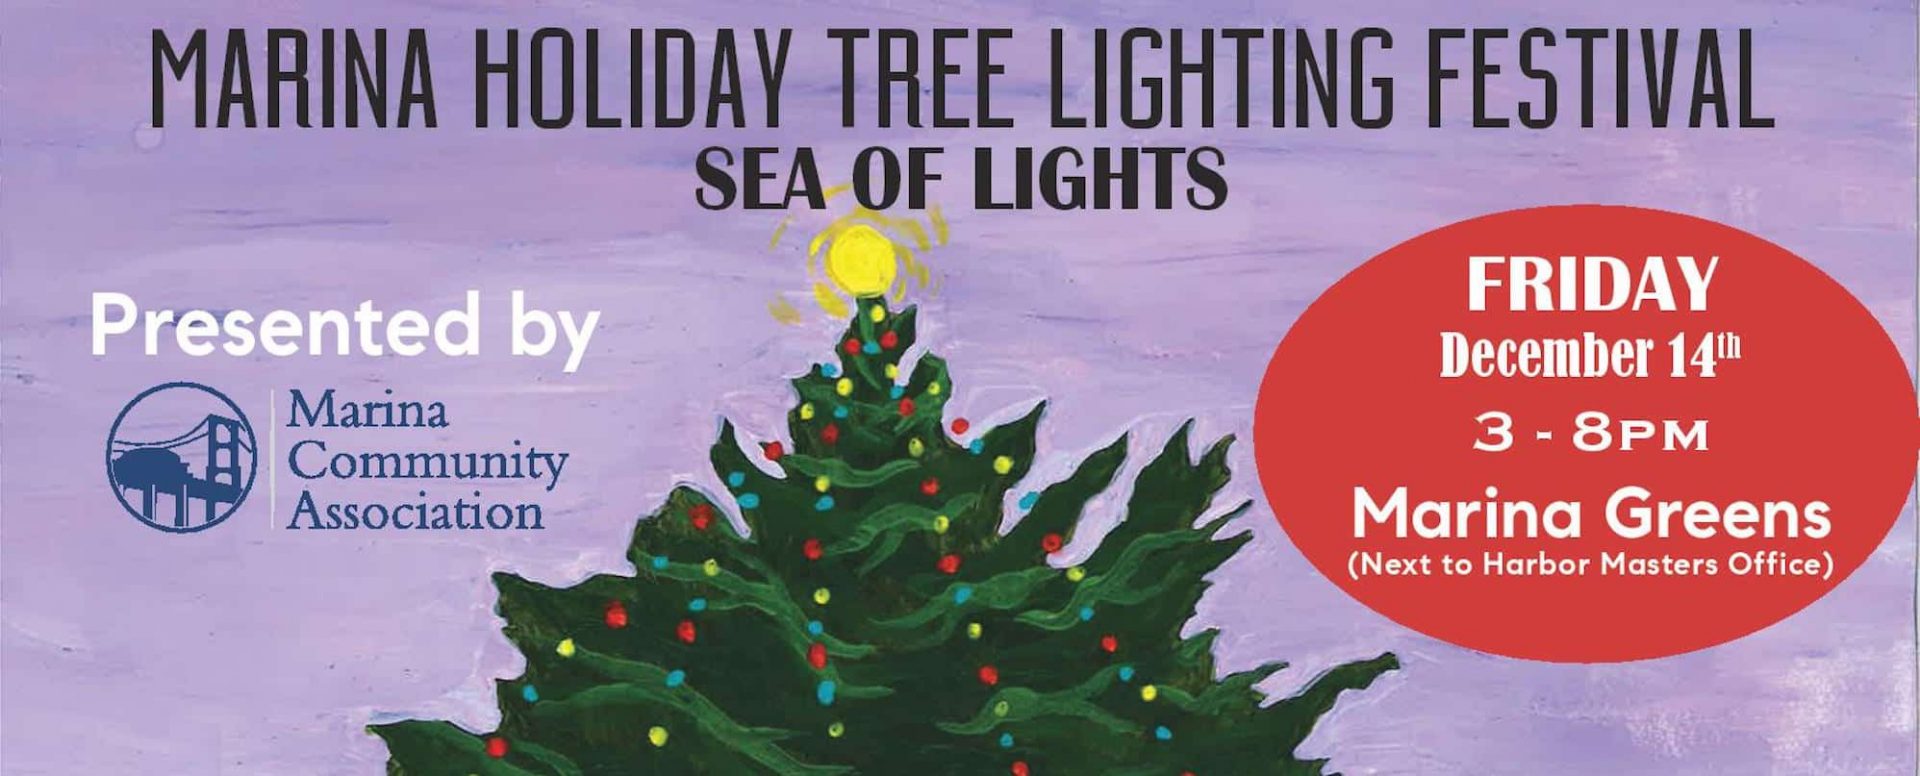 Marina Holiday Tree Lighting Festival